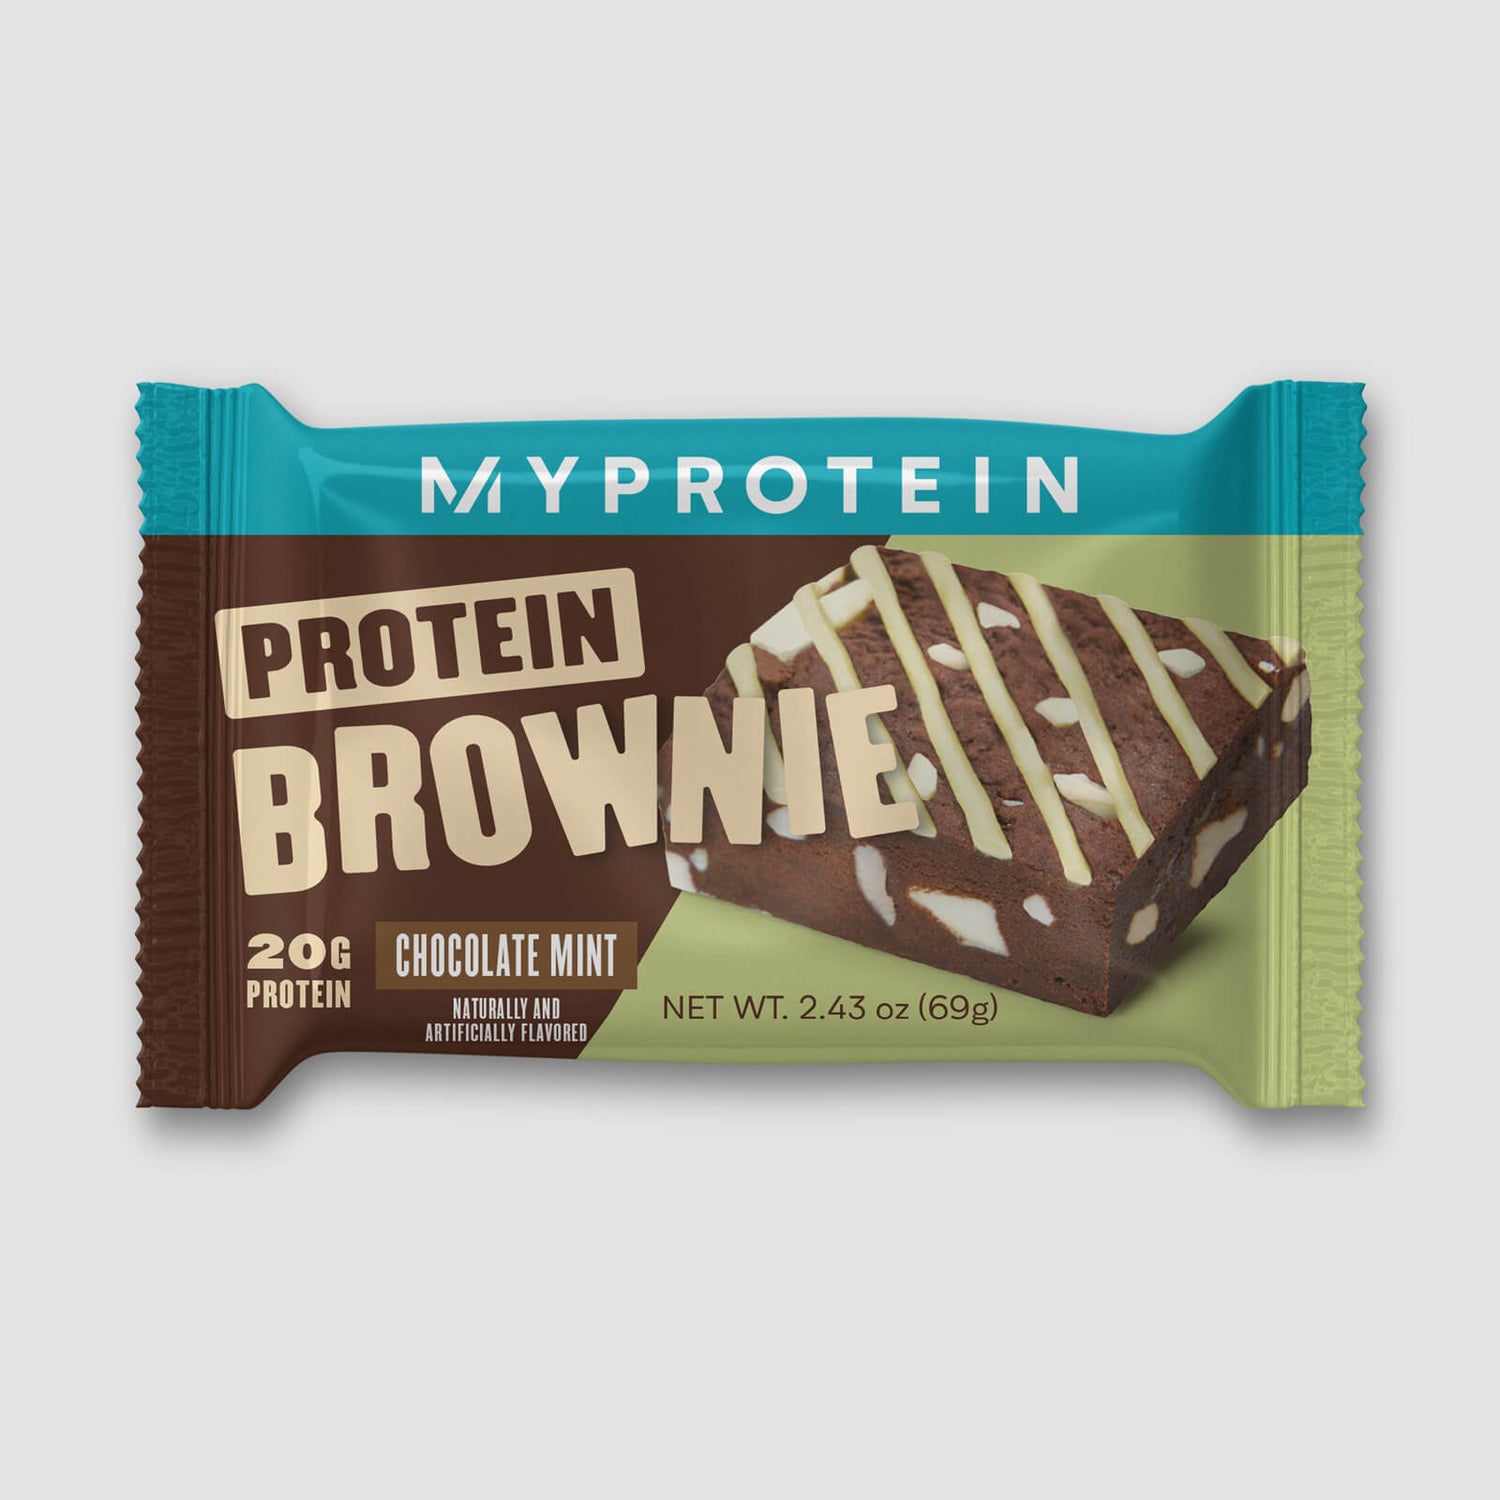 Protein Brownie Sample